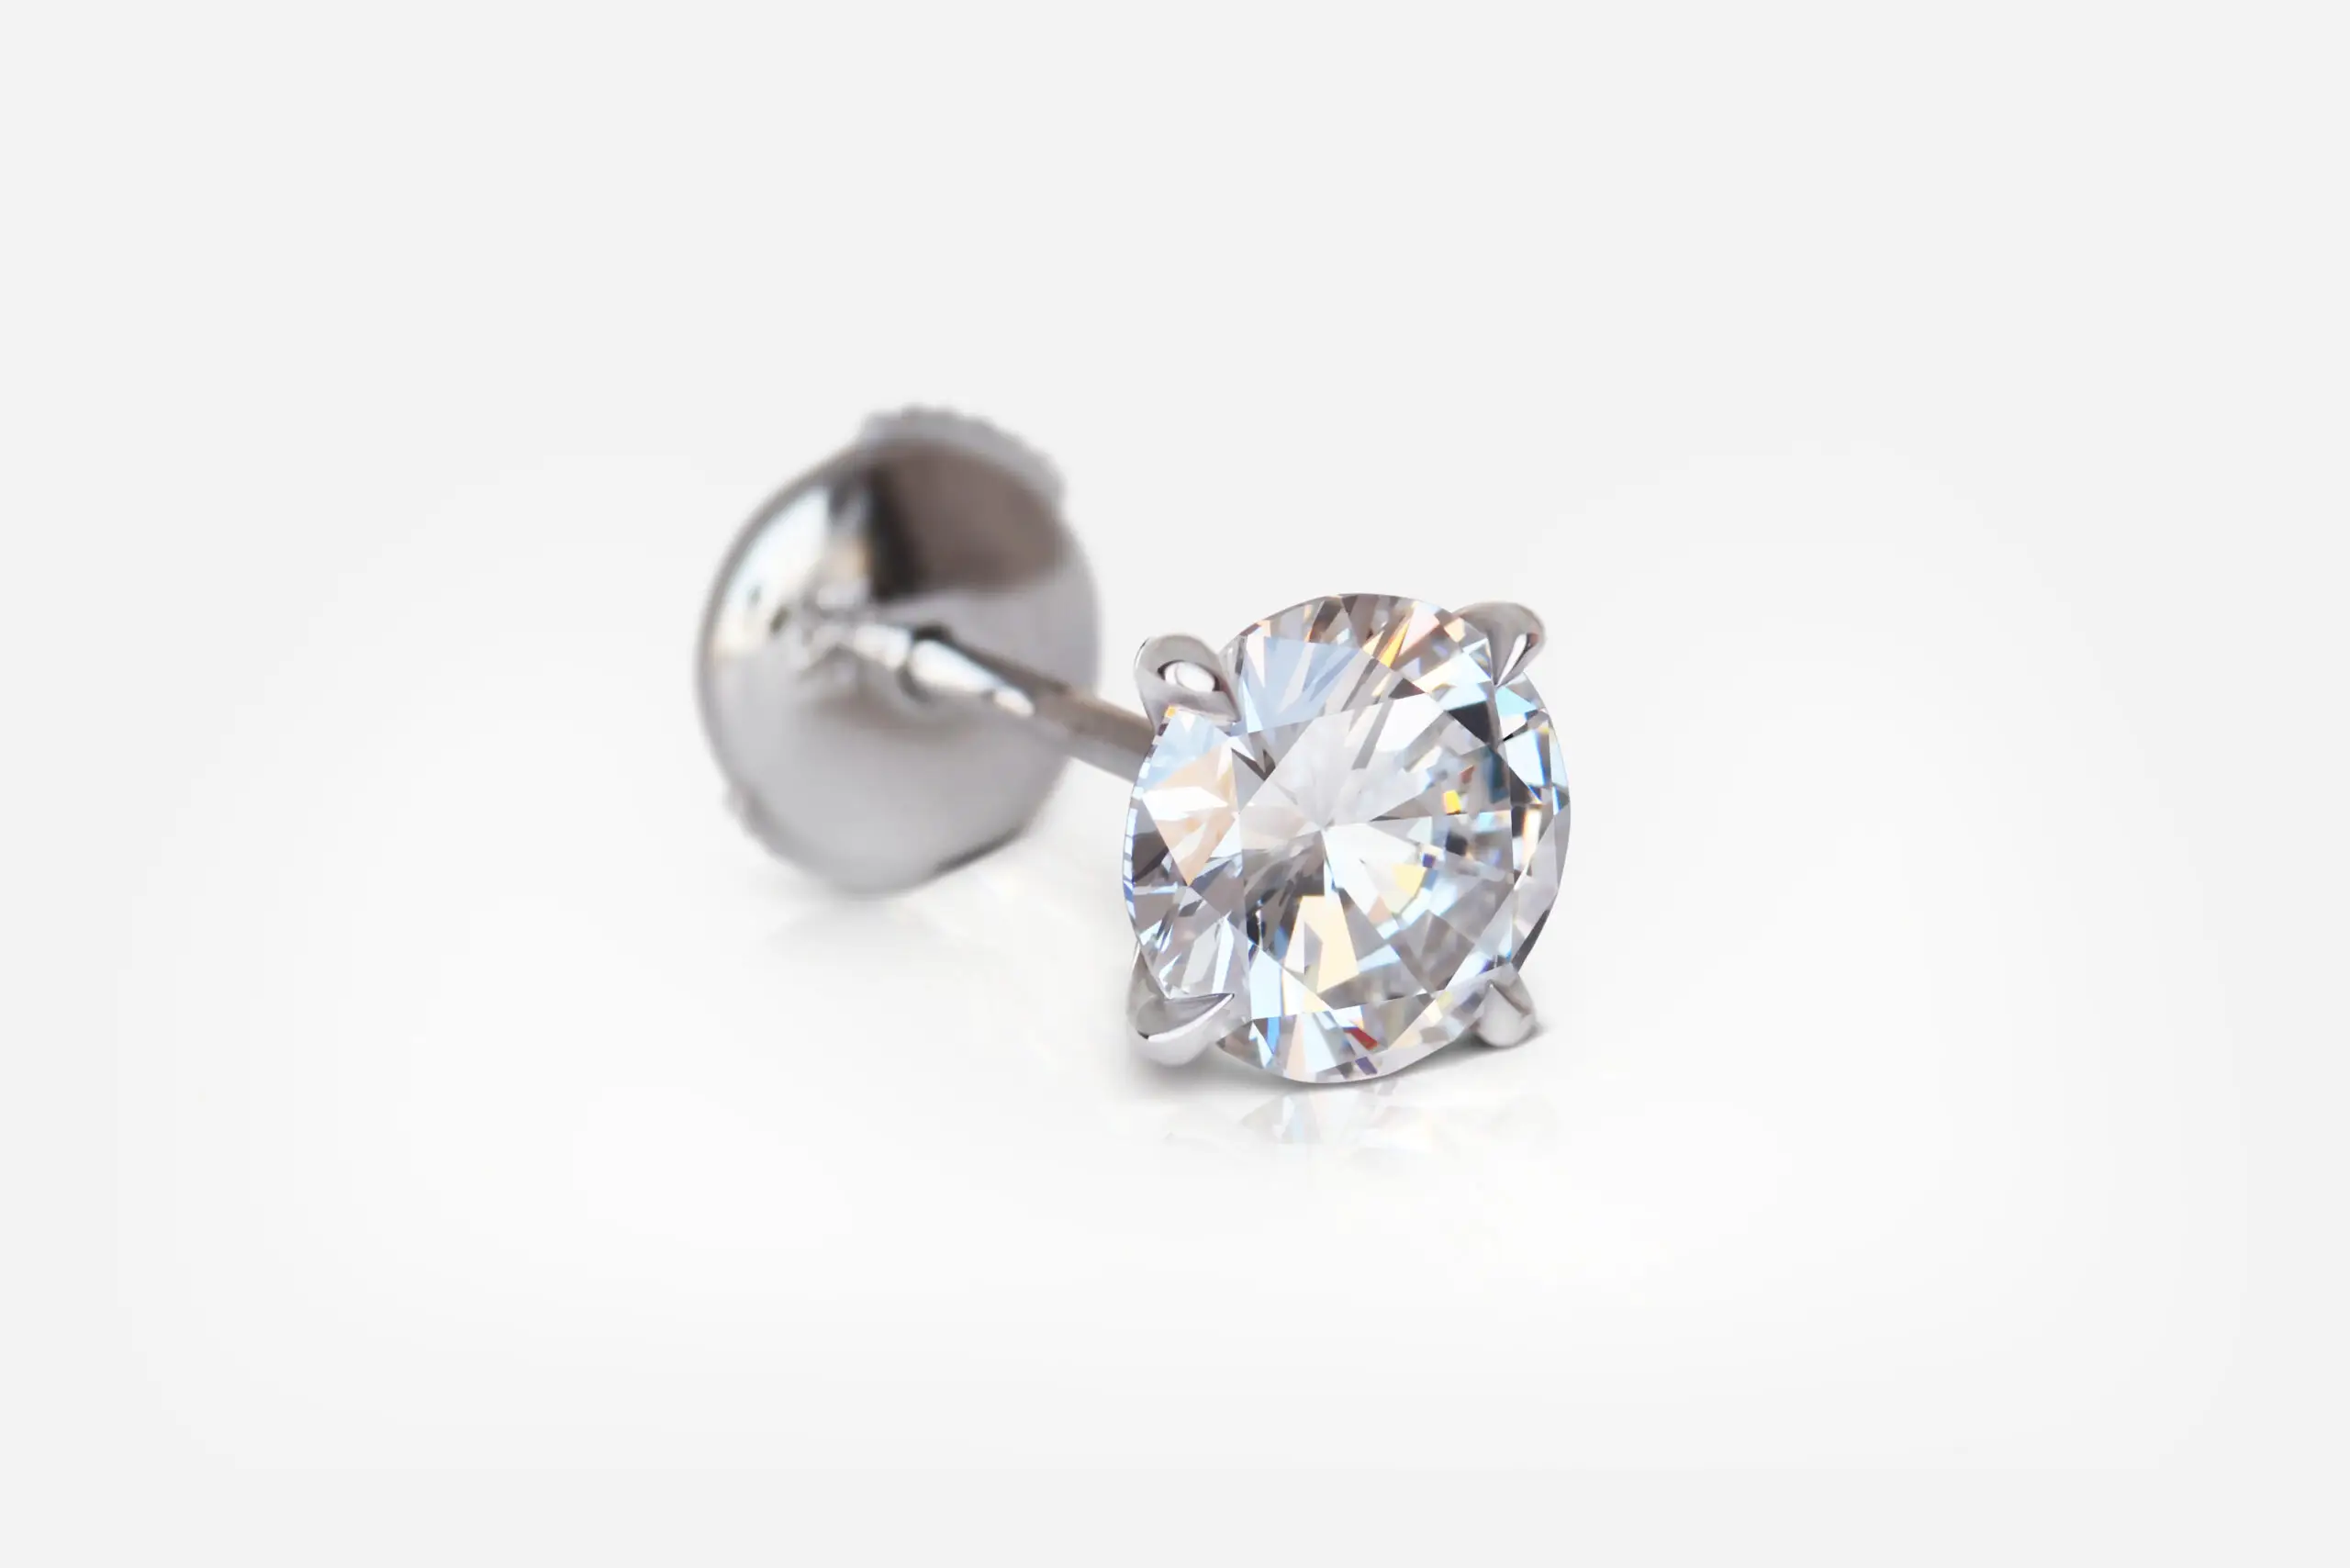 1.01 and 1.01 carat Studs Pair E VVS1 VS1 Round Shape Diamonds GIA - thumb picture 1